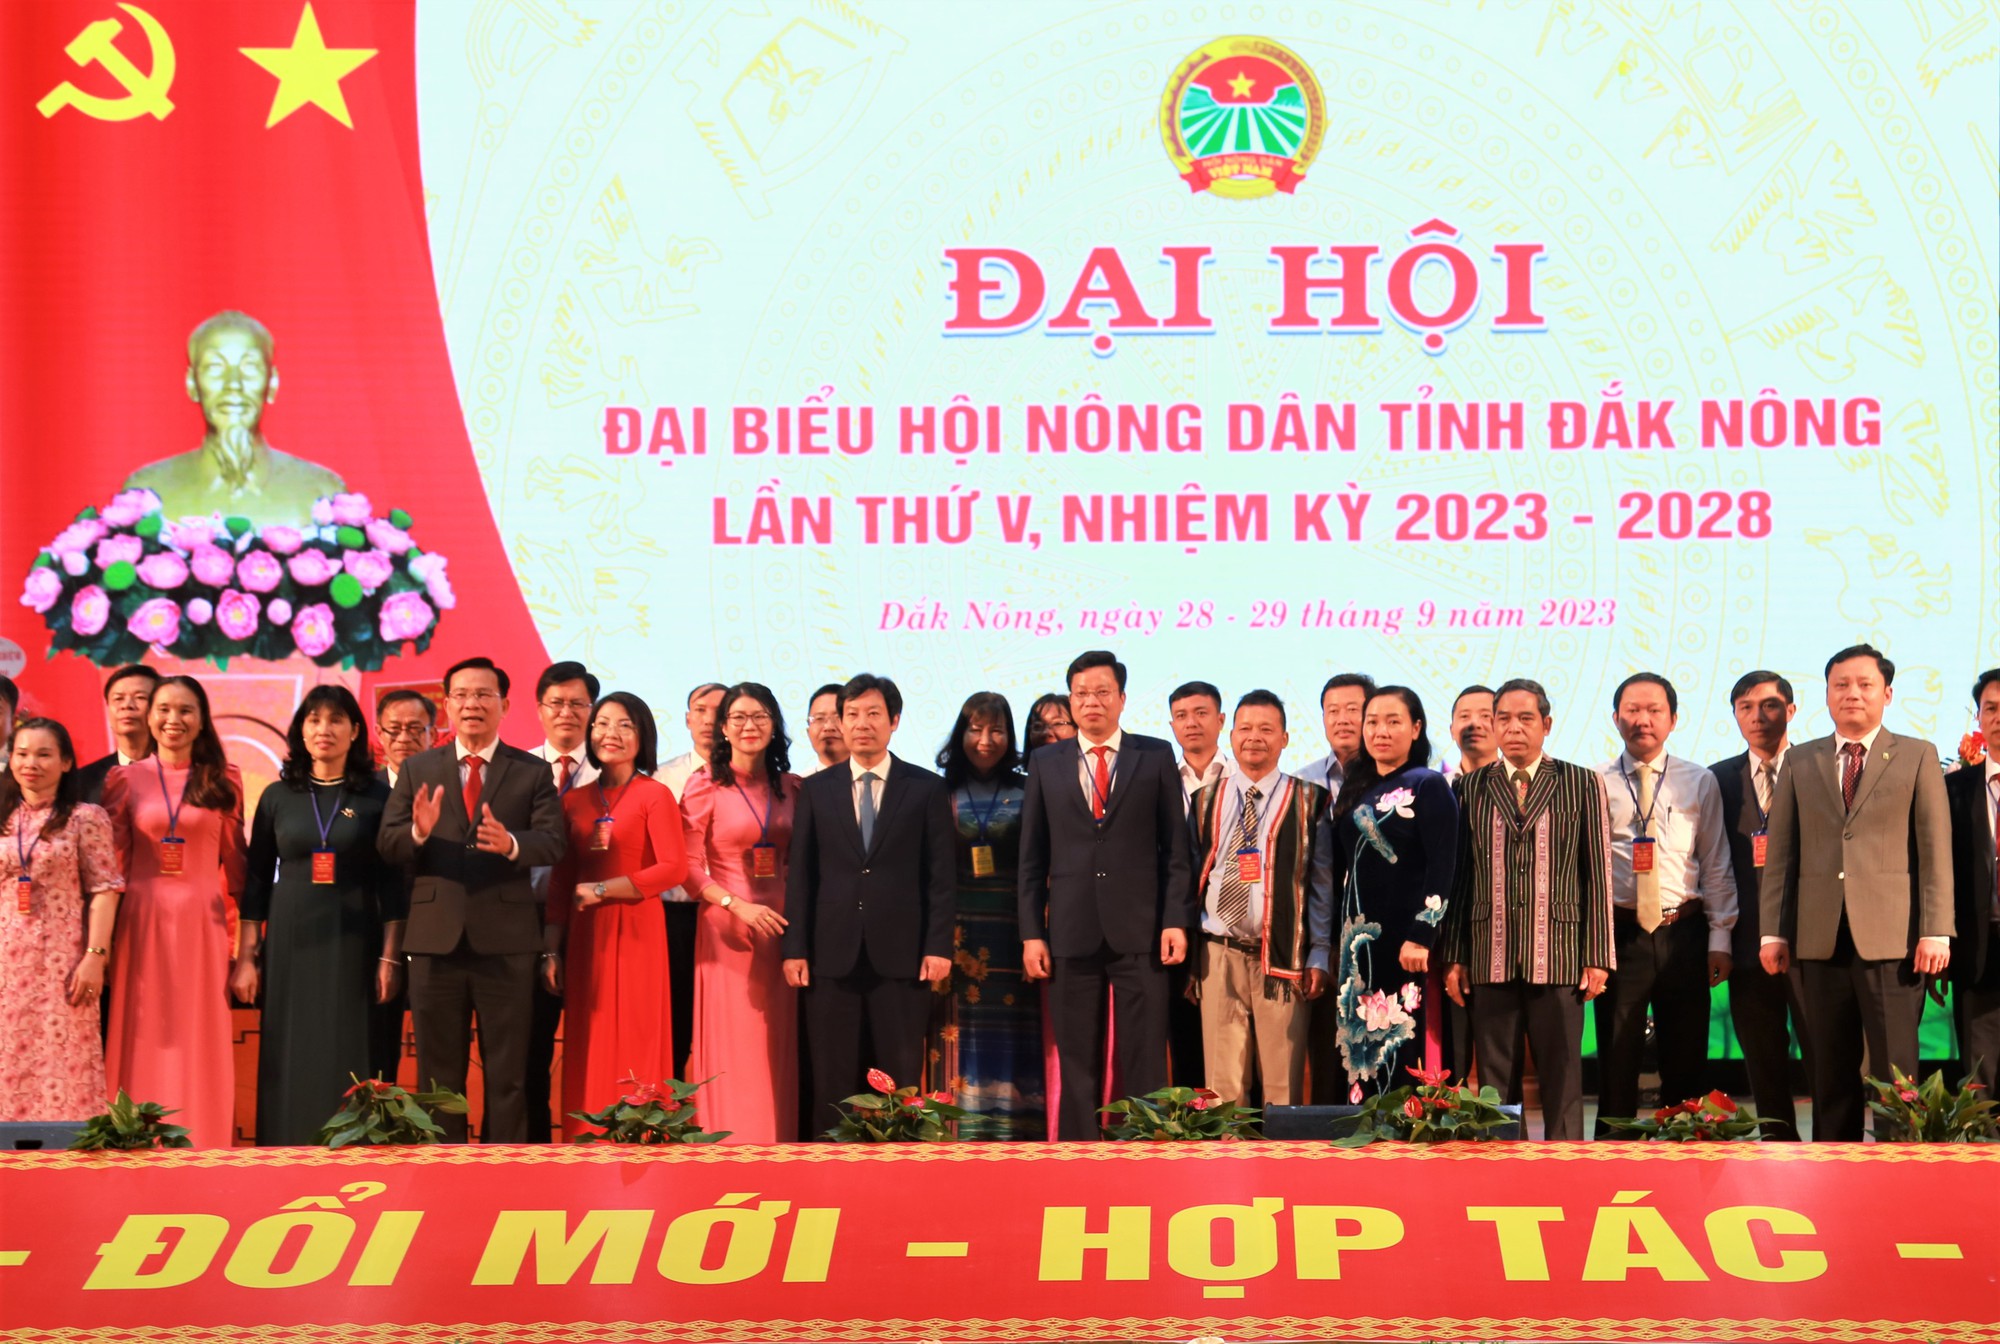 Tiểu sử ông Hồ Gấm - Chủ tịch Hội Nông dân tỉnh Đắk Nông vừa tái đắc cử nhiệm kỳ mới - Ảnh 1.